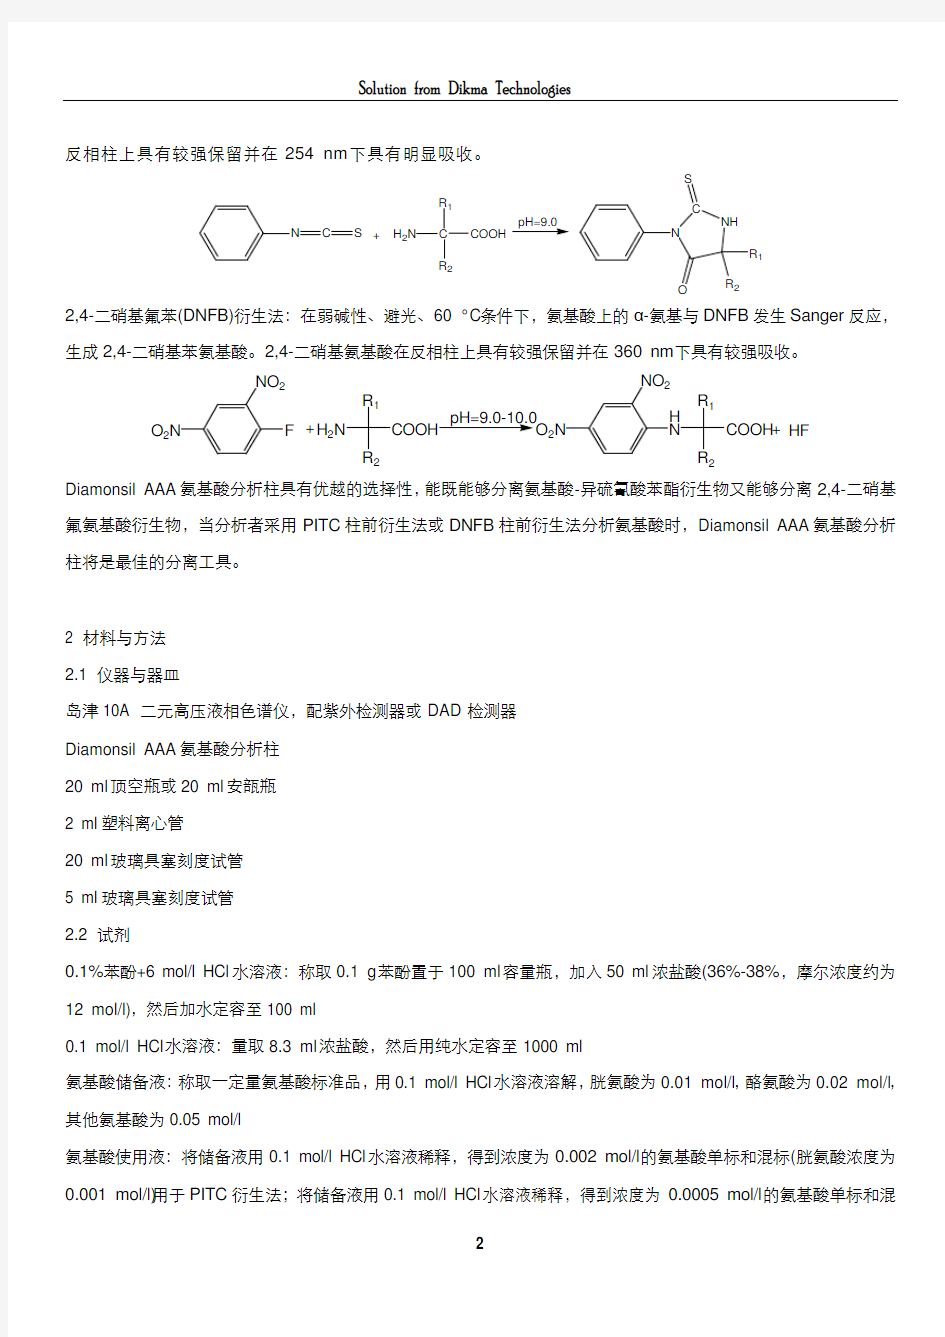 氨基酸分析解决方案及原理